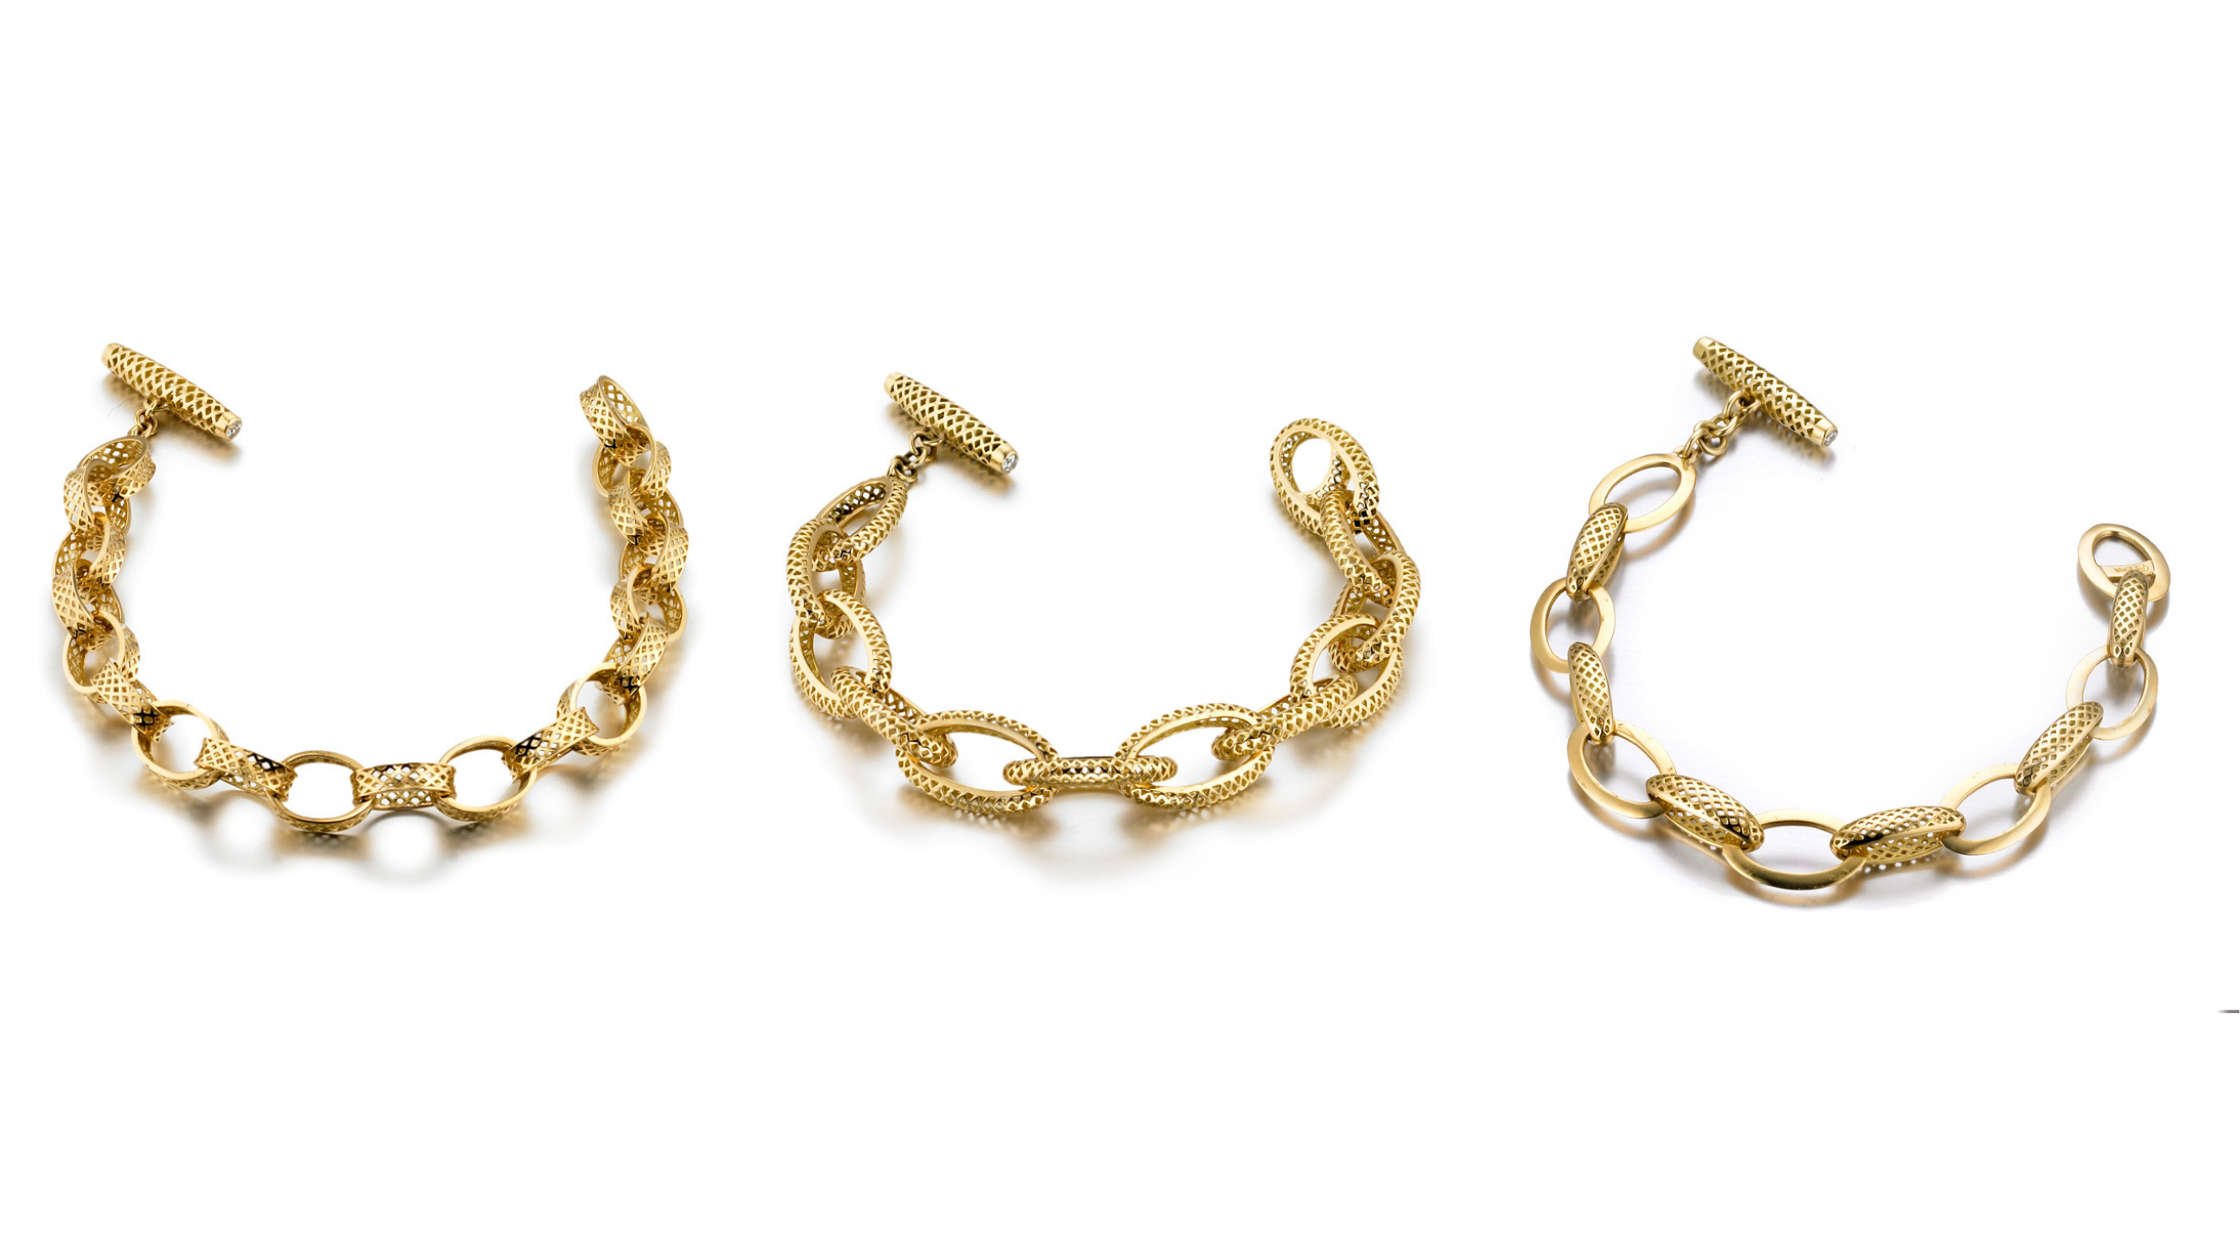 Bracelet, Bracelets, 18k Yellow Gold, Gold, Charm Bracelets